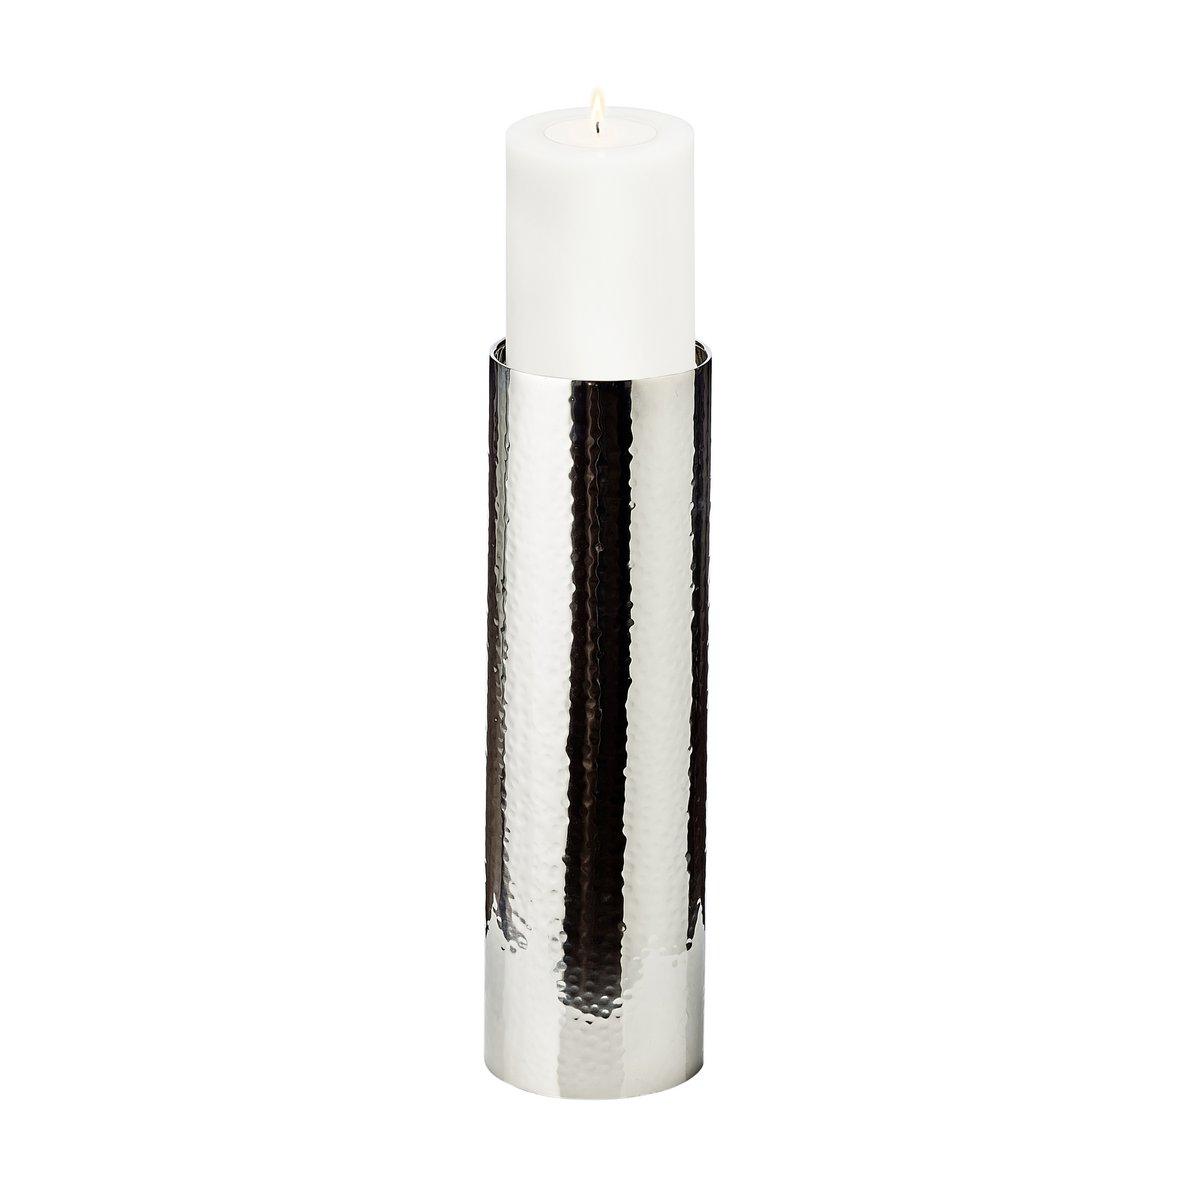 EDZARD Kerzenständer Boston für Kerze Durchmesser 10 cm, gehämmert, Edelstahl glänzend vernickelt, H 40 cm - HomeDesign Knaus